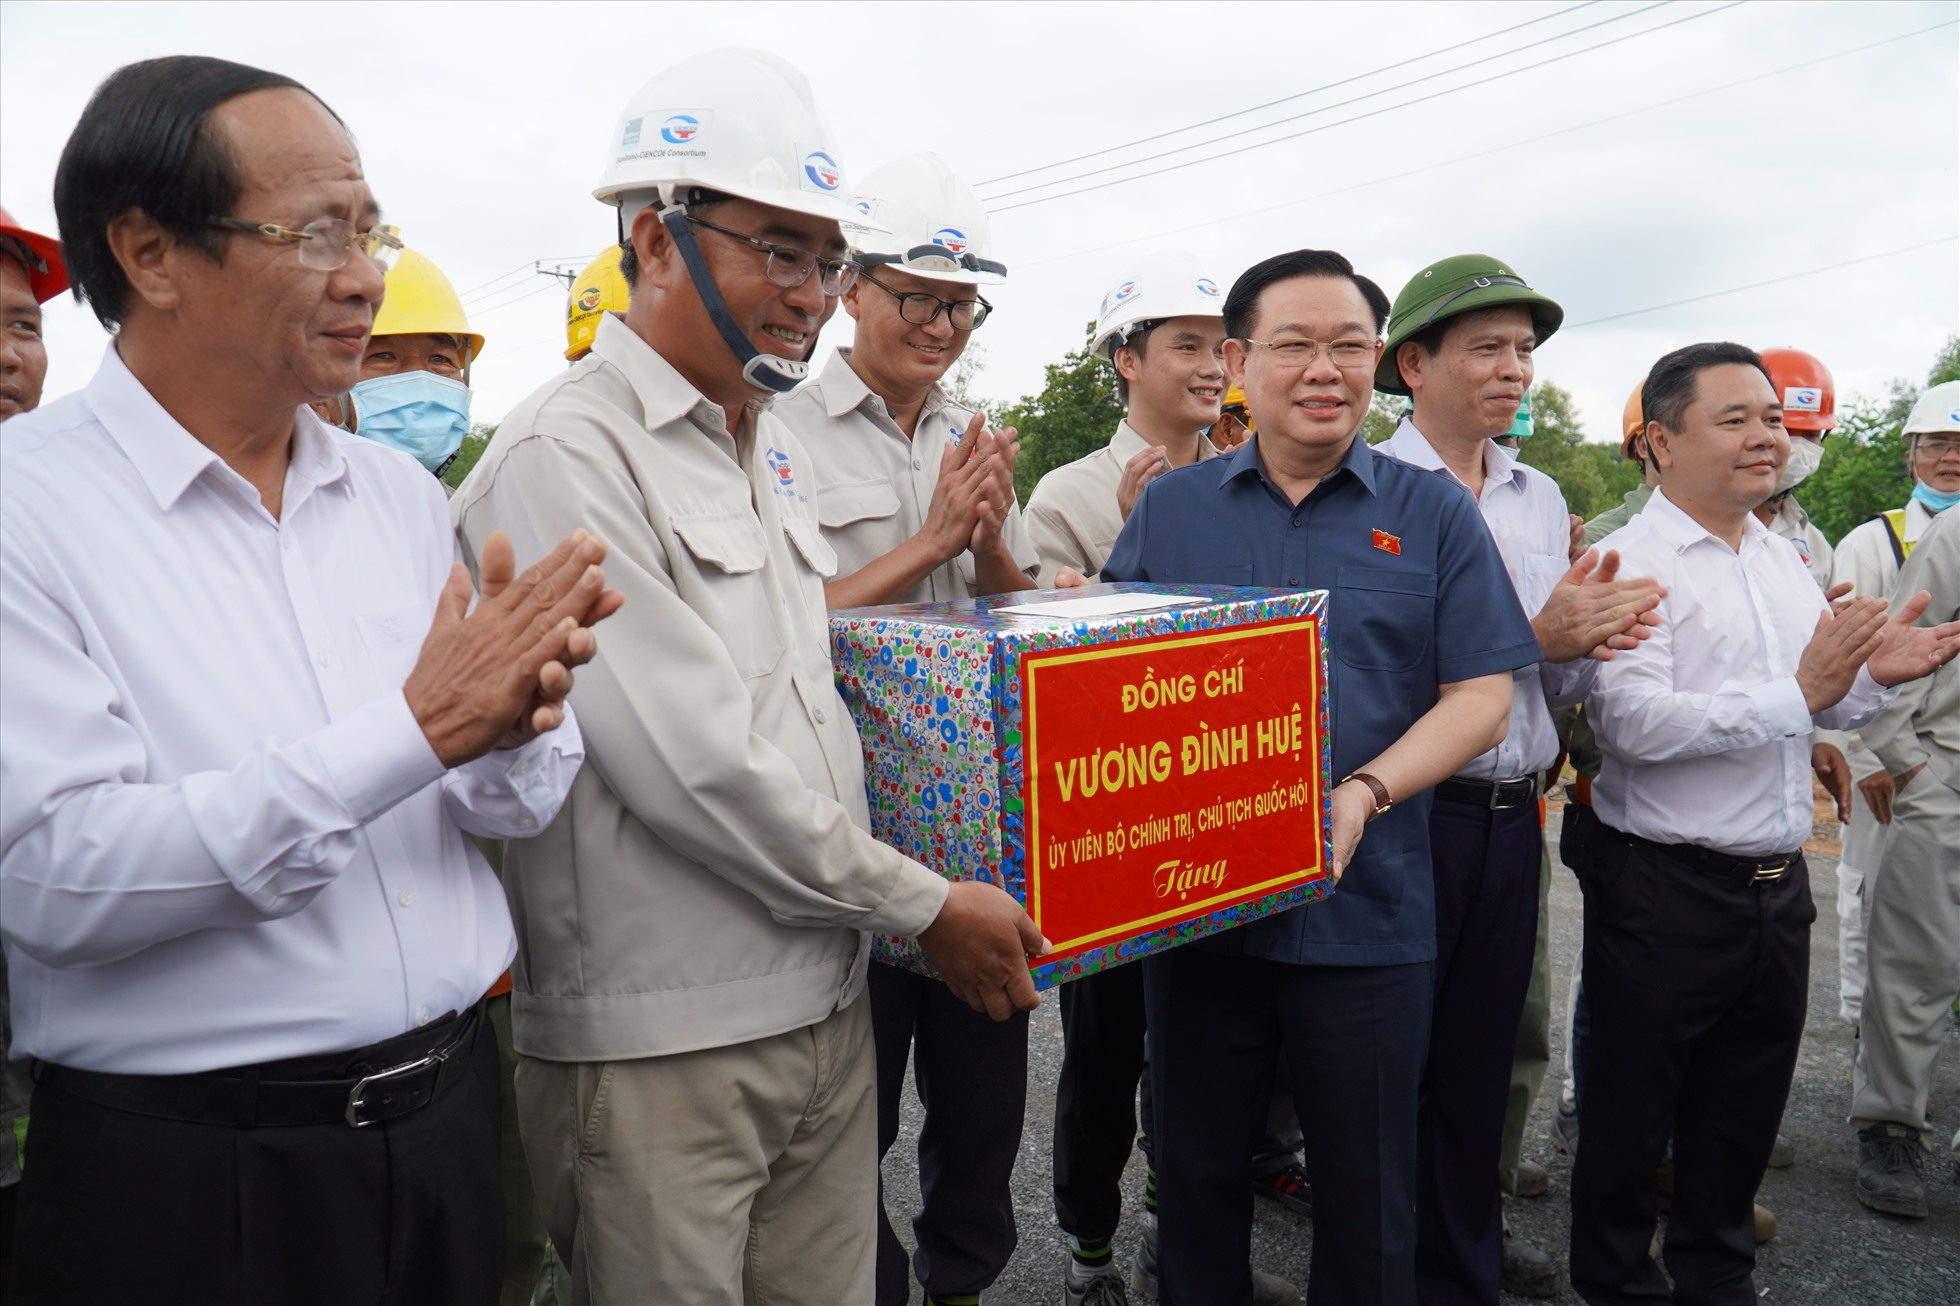 Chủ tịch Quốc hội Vương Đình Huệ tặng quà cho cán bộ công nhân viên đang thi công tại dự án cao tốc Bến Lức - Long Thành. Ảnh: Hà Anh Chiến